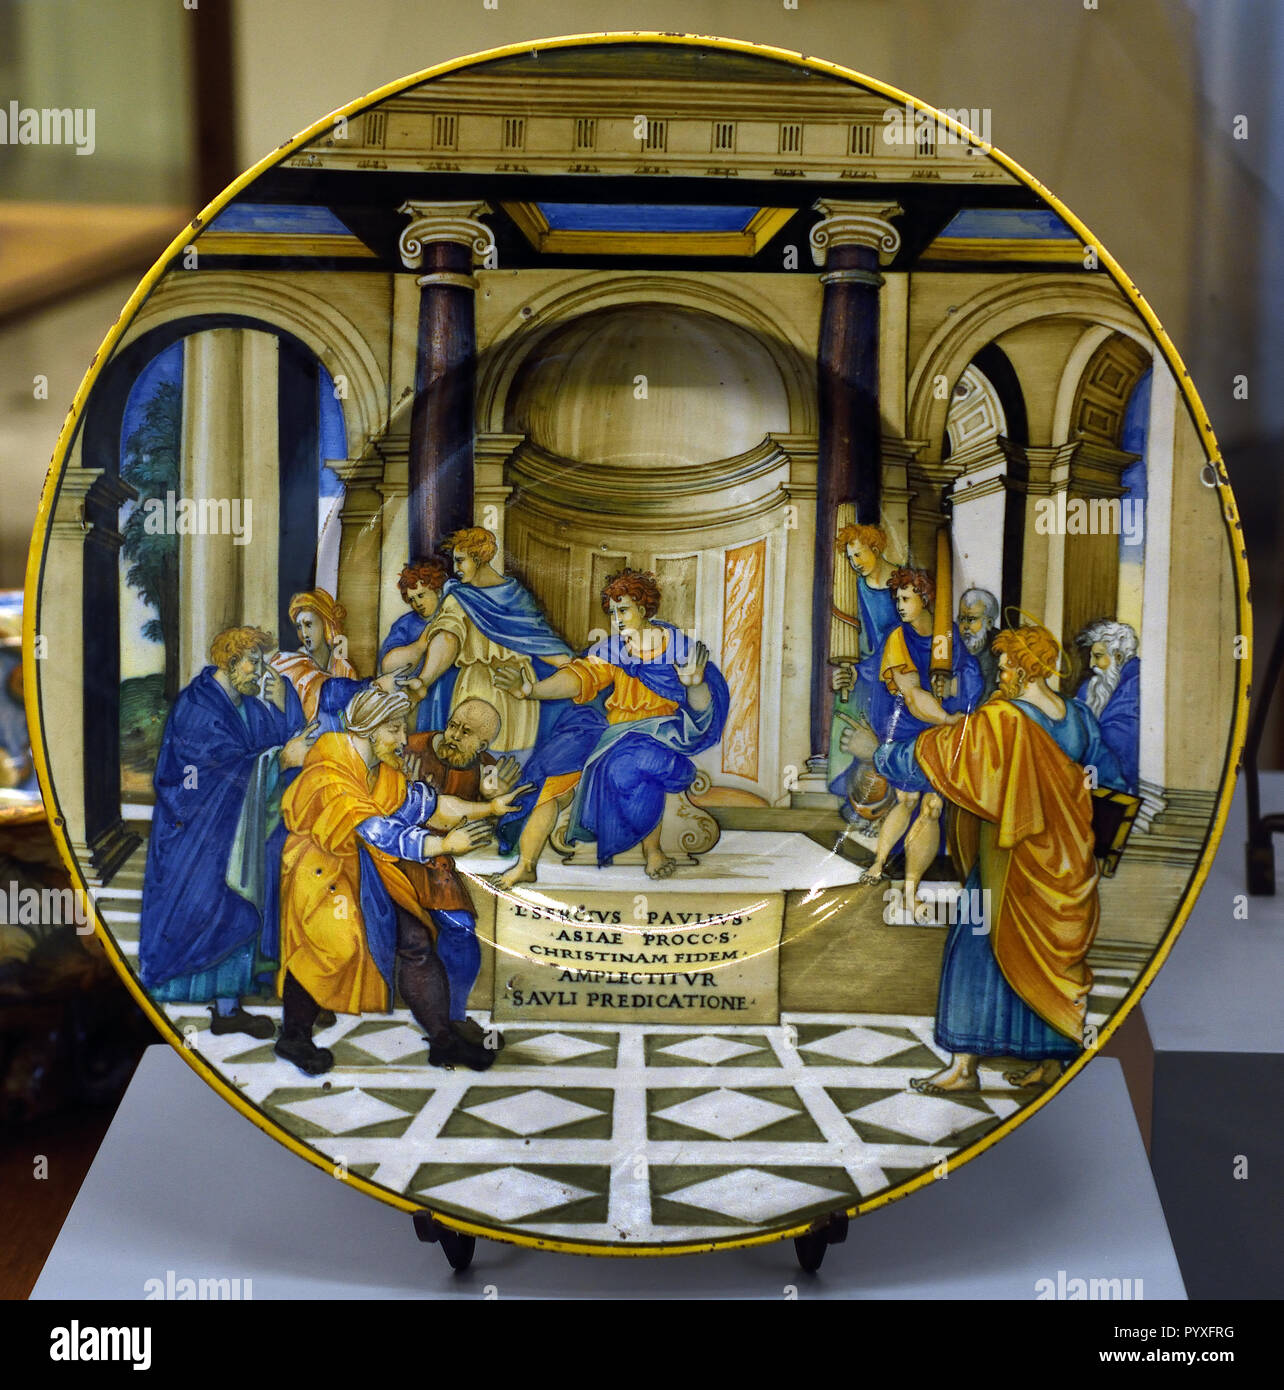 Tolle Platte mit der Umstellung von Sergio Paolo 1525-1535 Nicola da Urbino 16. Jahrhundert Museum für Antike Kunst im Castello Sforzesco - Schloss Sforza in Mailand Italien Stockfoto